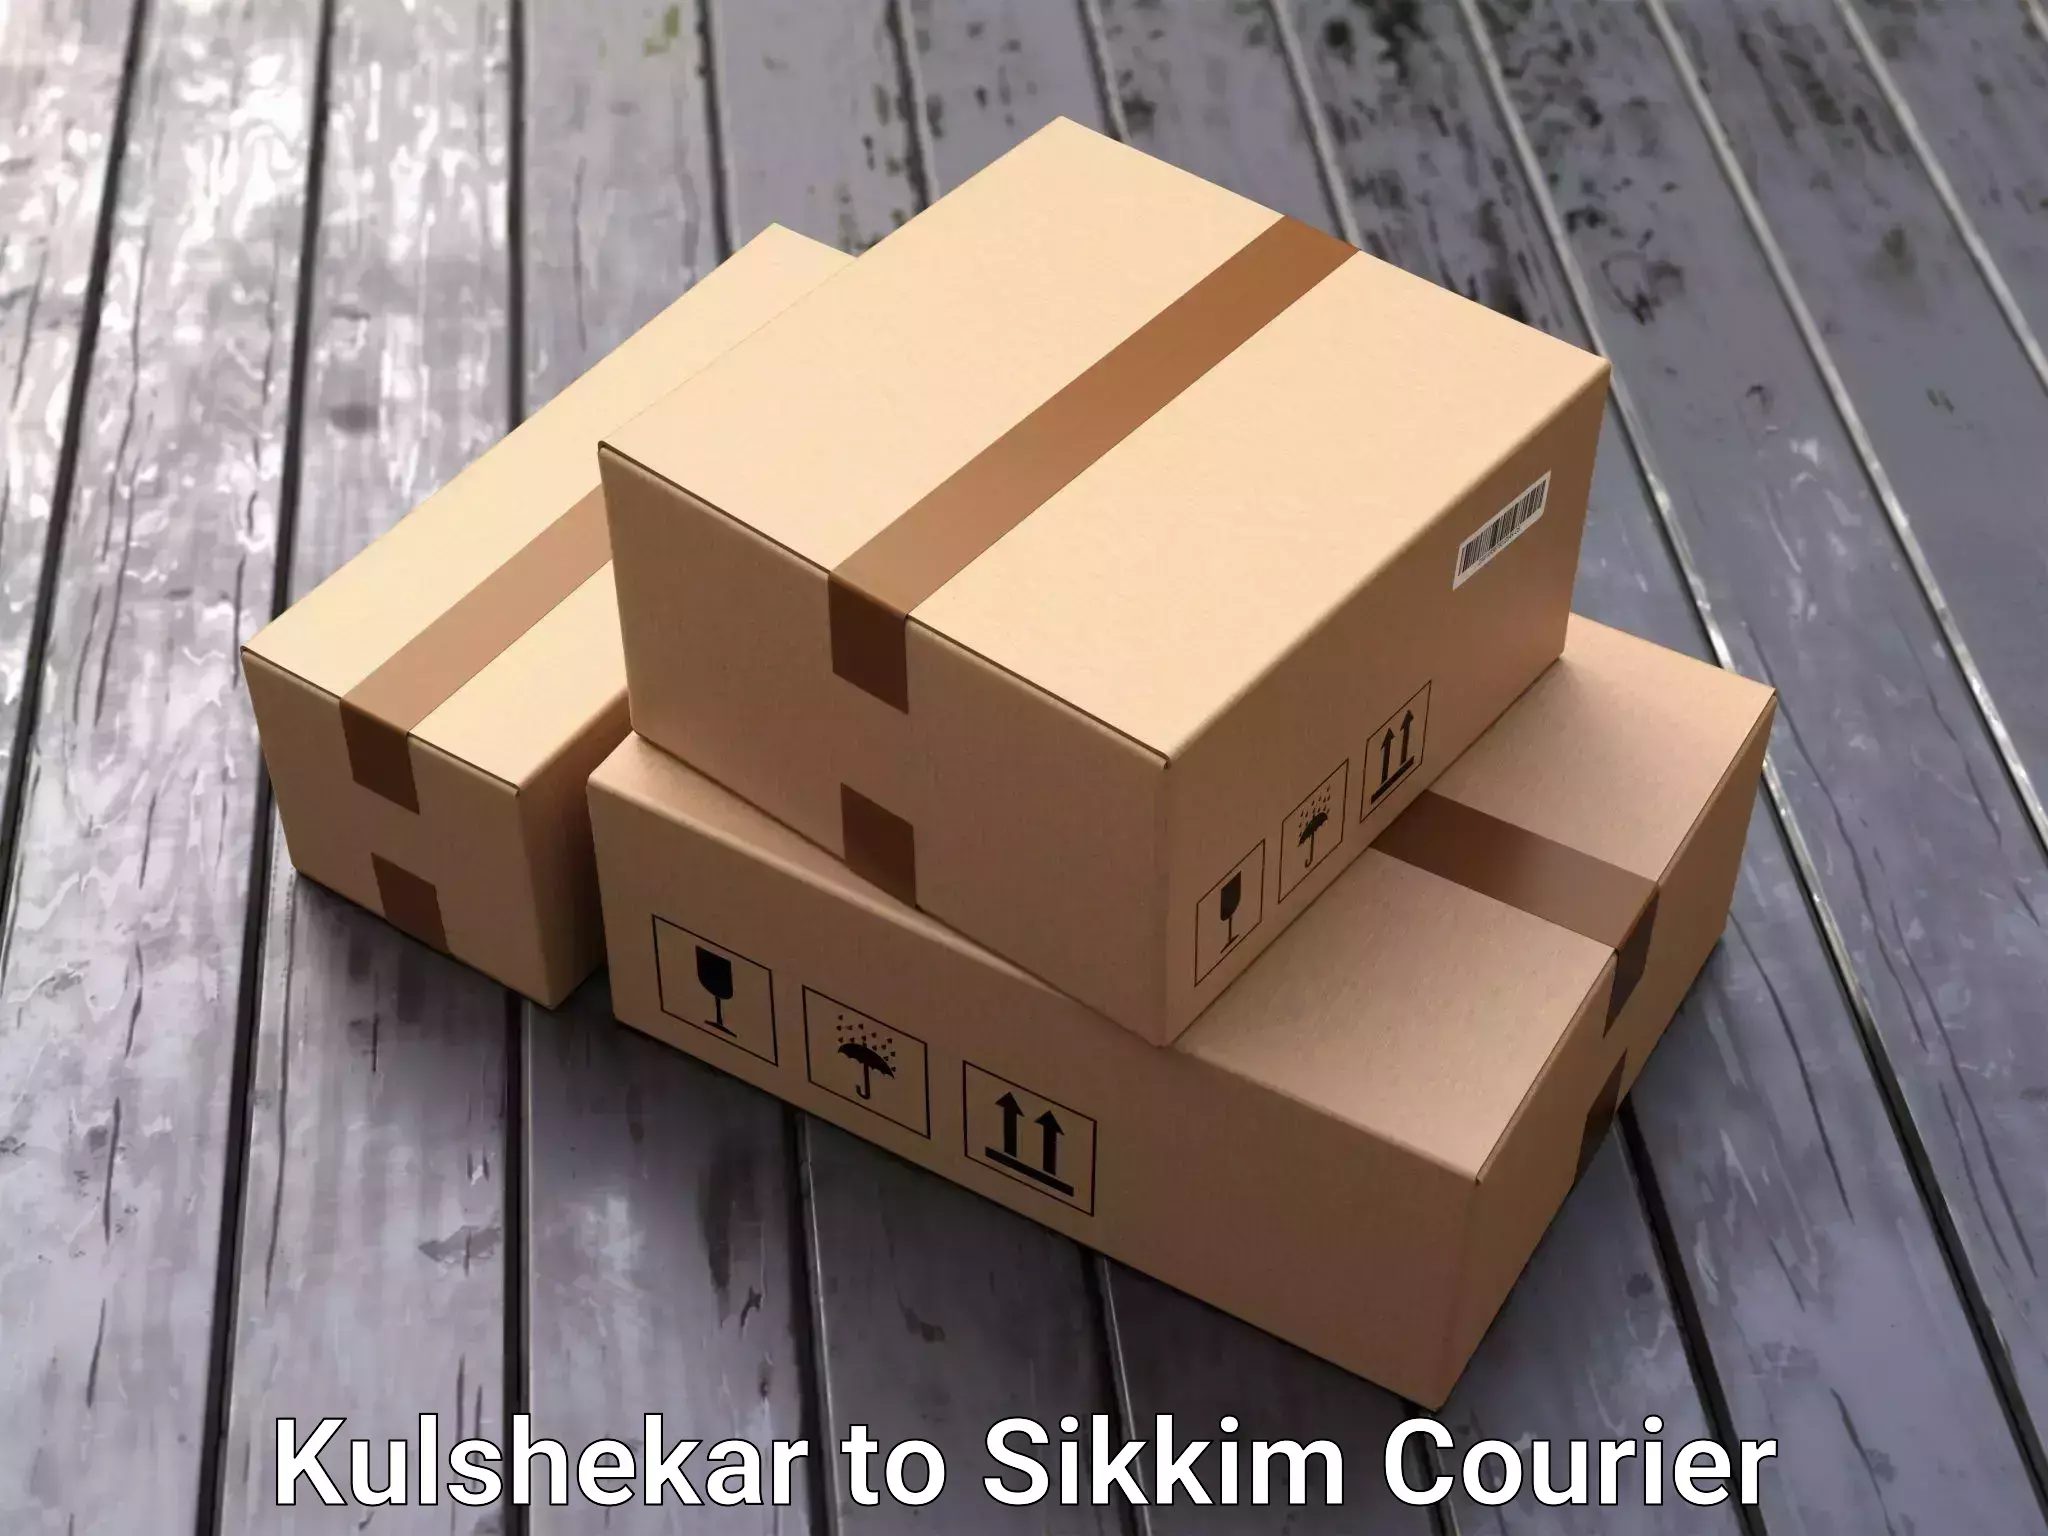 Furniture transport experts Kulshekar to Geyzing